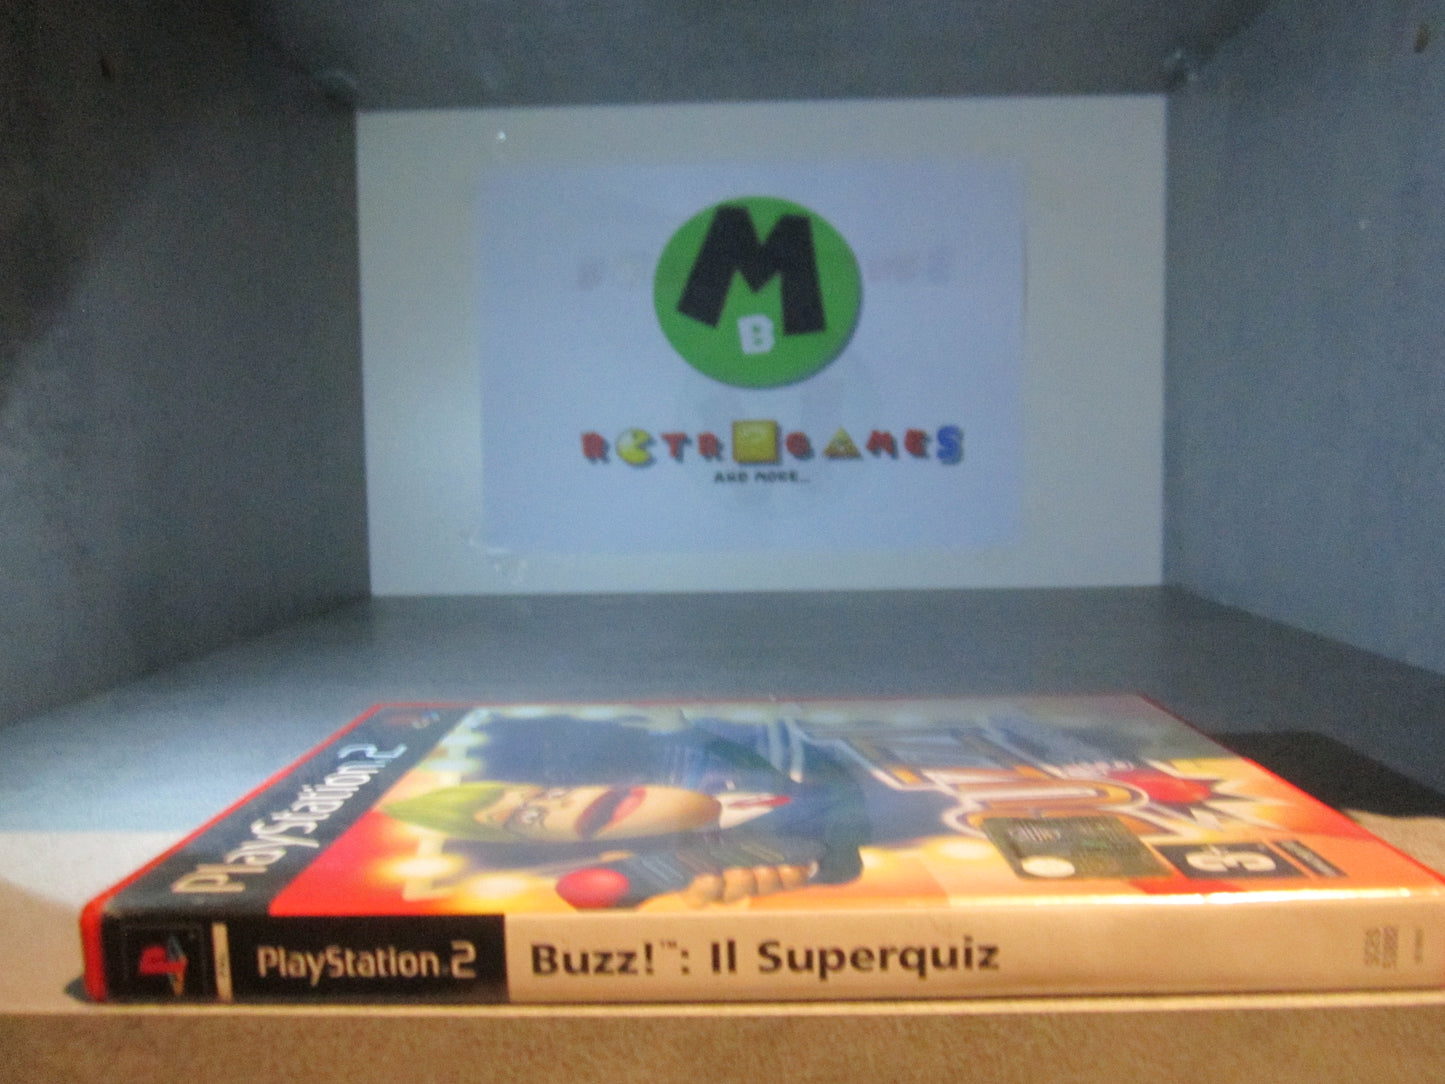 Buzz The superquiz + Buzzers